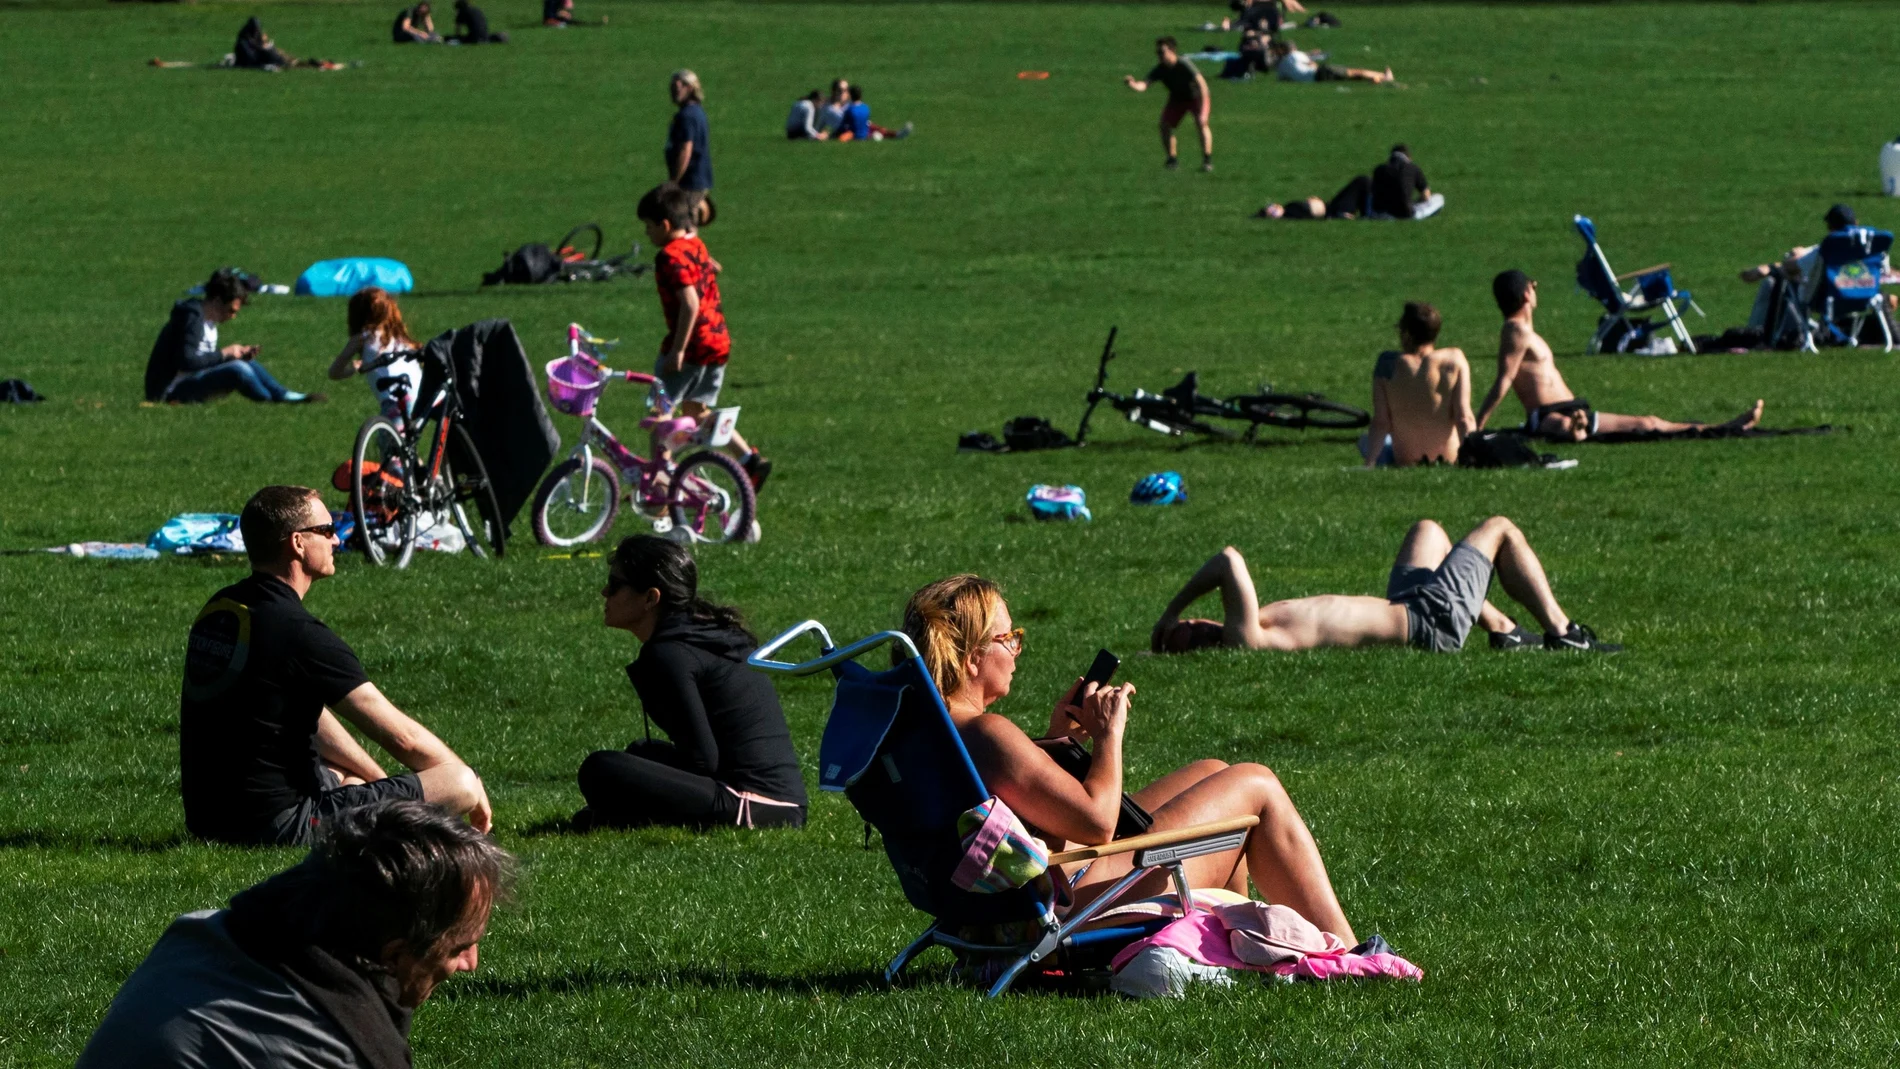 Decenas de personas aprovechan el día soleado en Central Park, en el centro de Nueva York, tratando de mantener la distancia social entre ellos